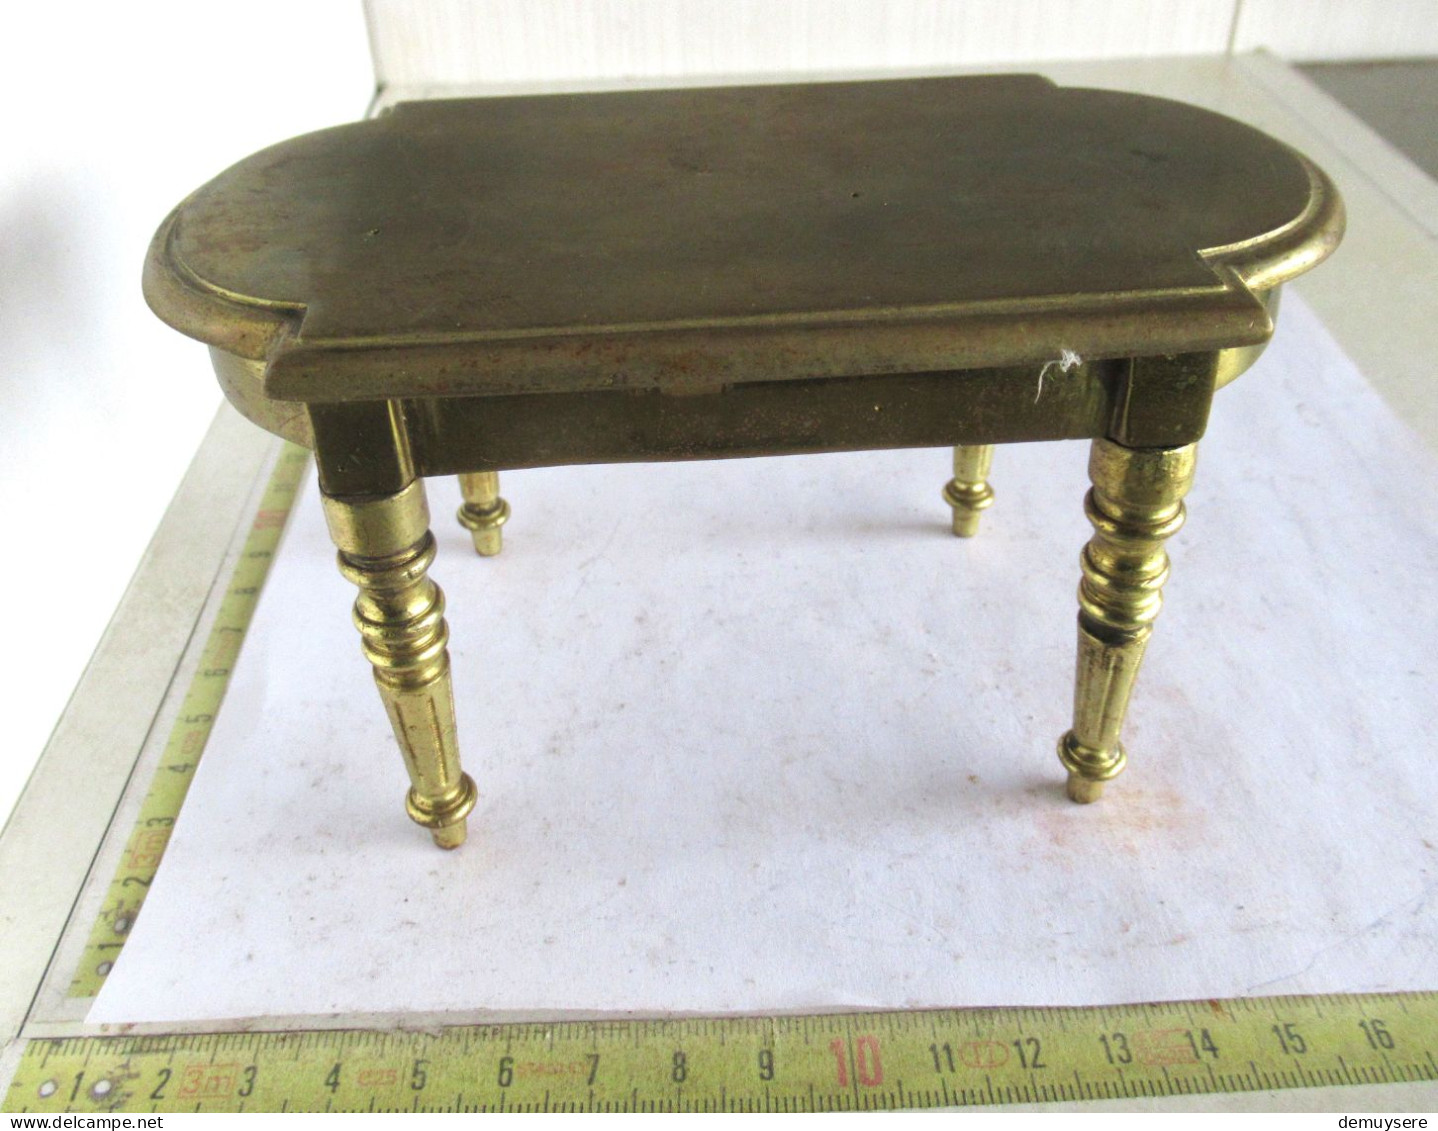 Lade 100 - Kleine Koperen Tafeltje - Petite Table En Cuivre - 625 Gram - Coppers